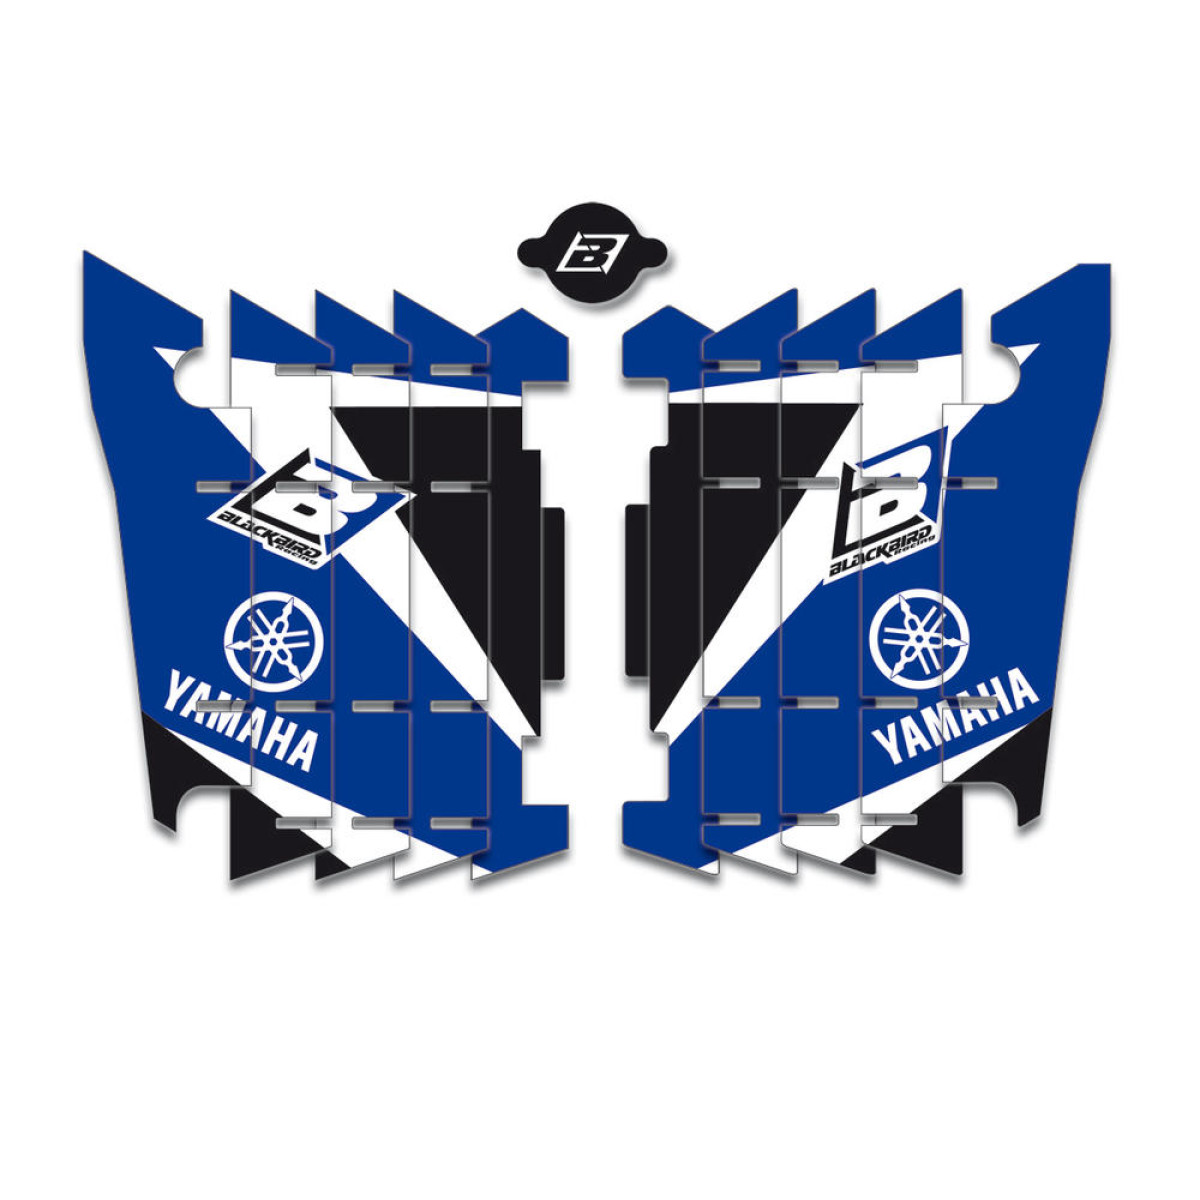 Blackbird Racing Autocollants pour Grille de Radiateur Dream 3 Yamaha YZF 250/450 14-17 WRF 250/450, Bleu/Noir/Blanc